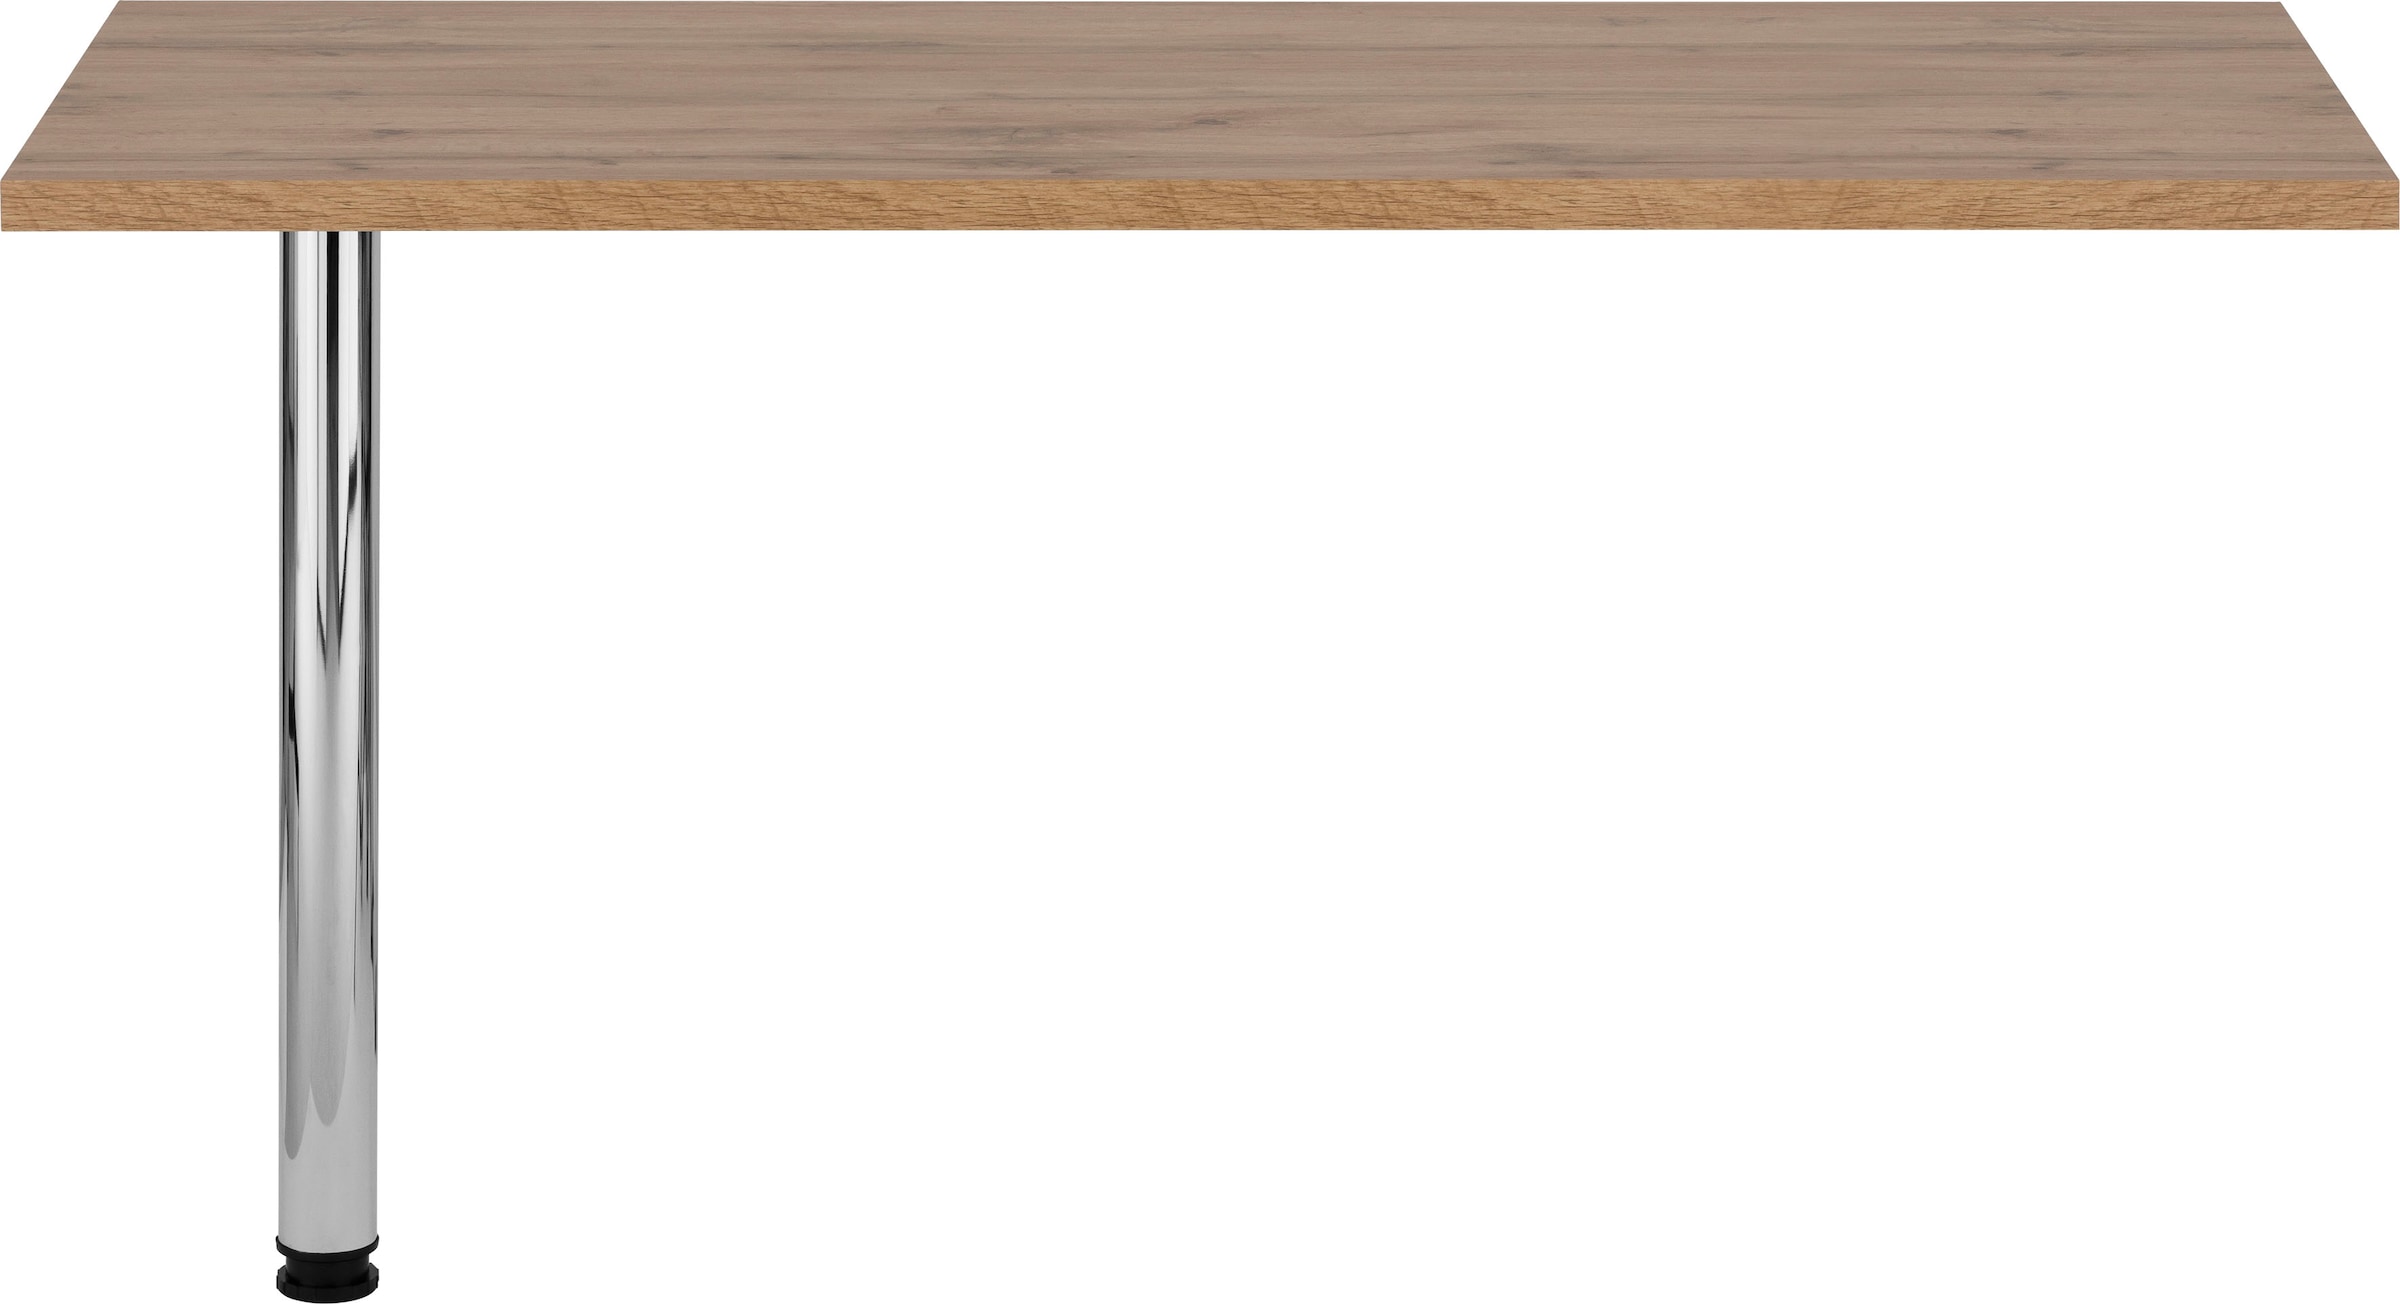 HELD MÖBEL Tresentisch »Virginia«, 138 cm breit, ideal für kleine Küchen  online kaufen